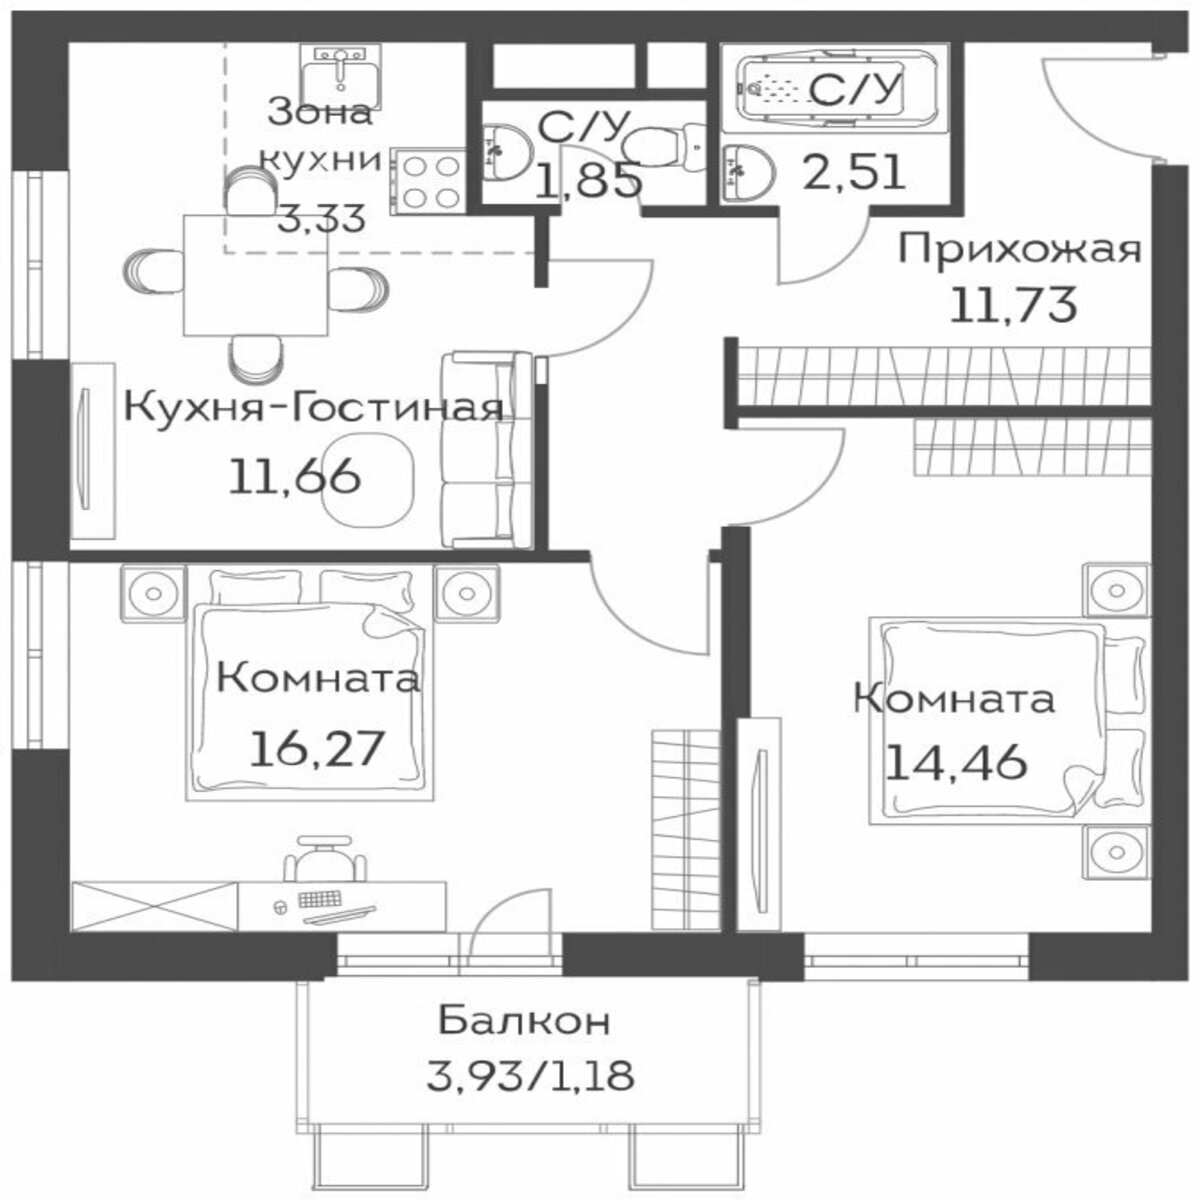 Распространенная планировка современной двухкомнатной квартиры